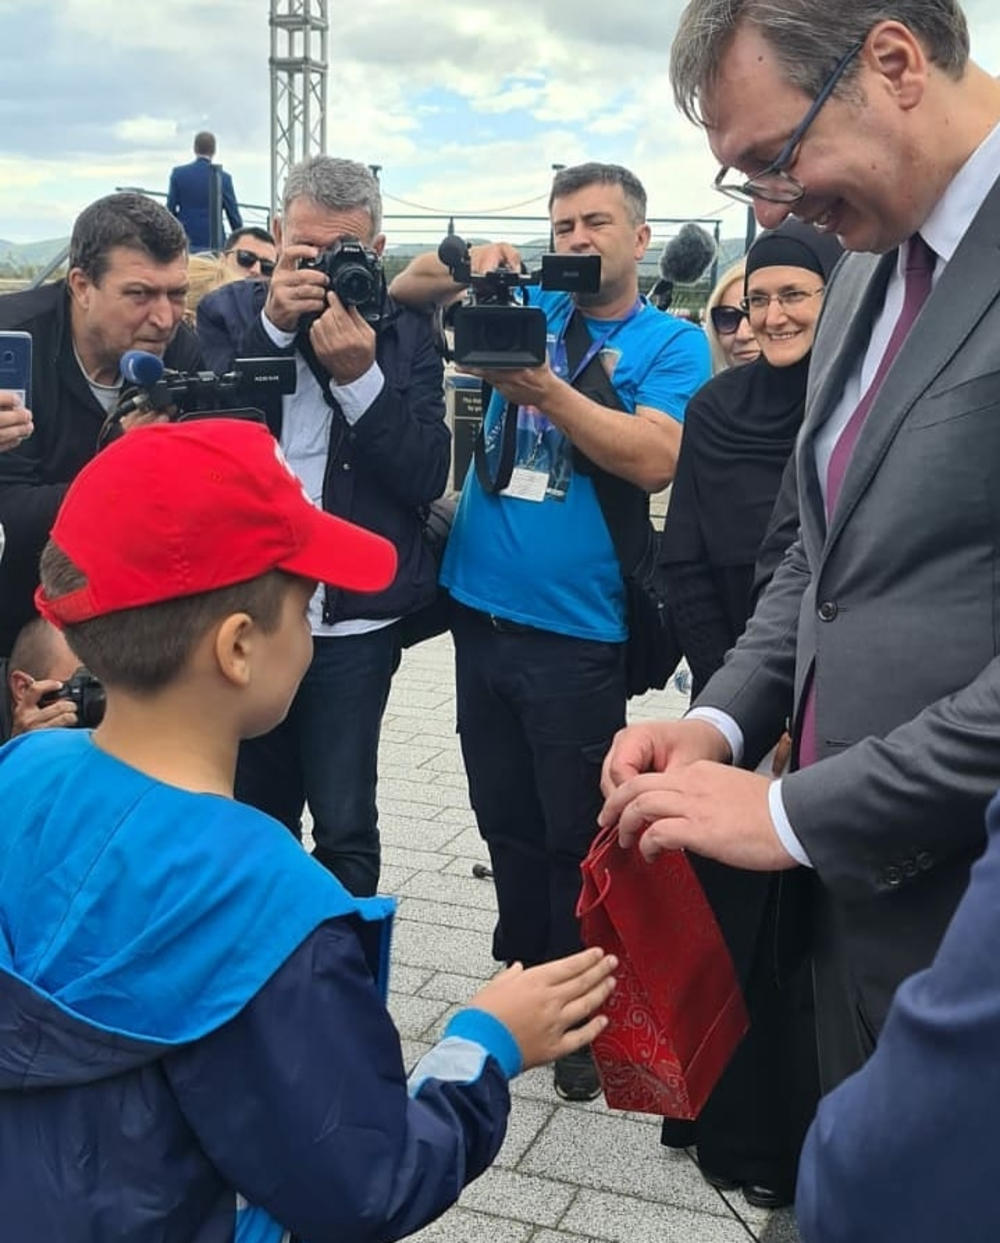 Mali Miloš daje poklon prredsedniku